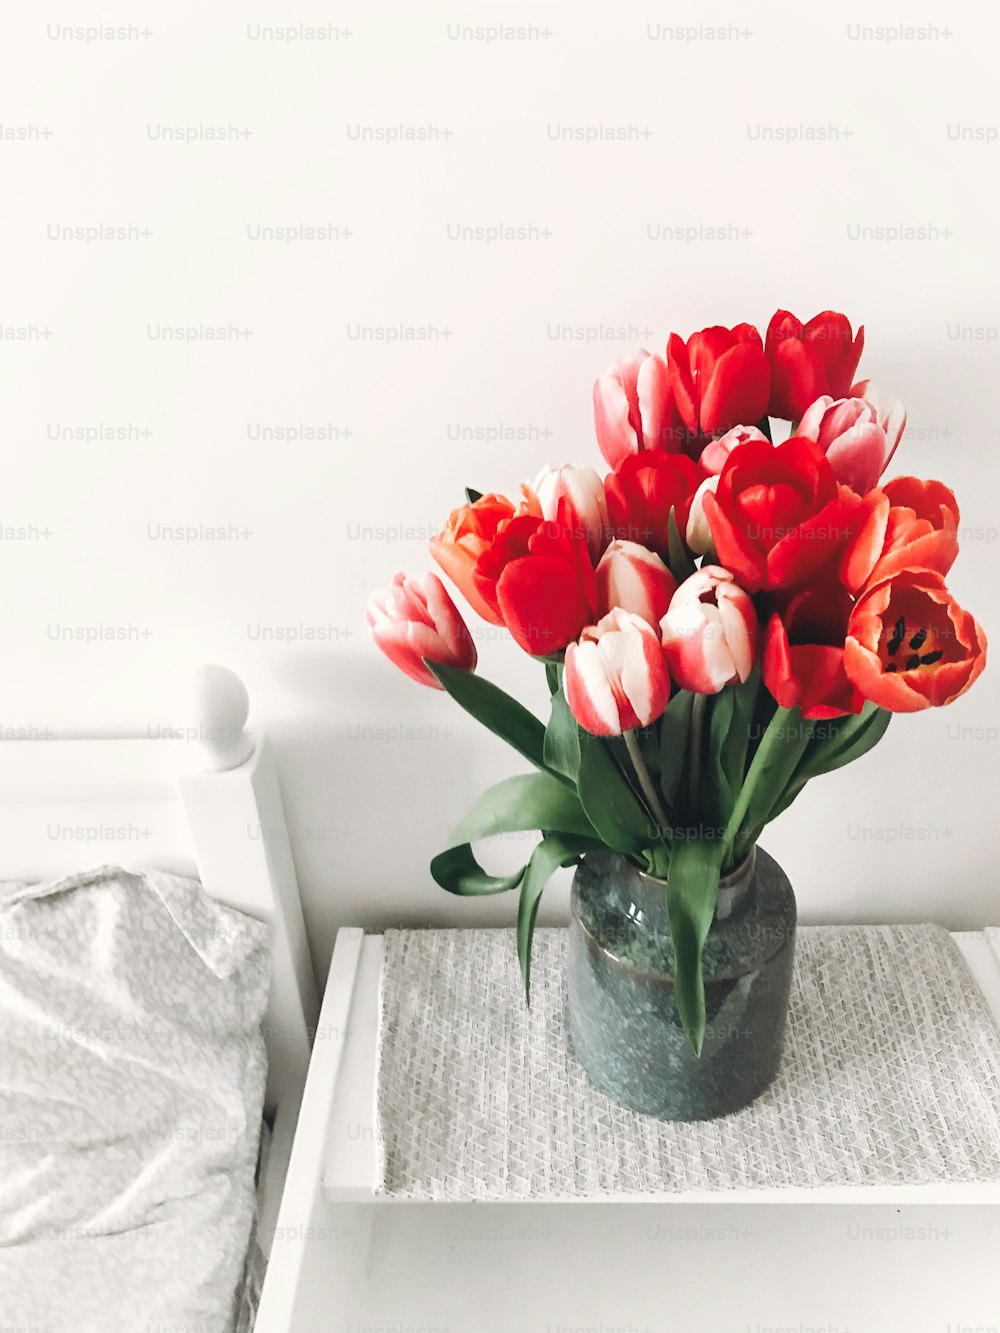 Belles tulipes rouges et roses dans un vase sur table de chevet en bois blanc près d’un lit blanc élégant, espace de copie. Bonjour le concept printanier. Bonne fête des mères